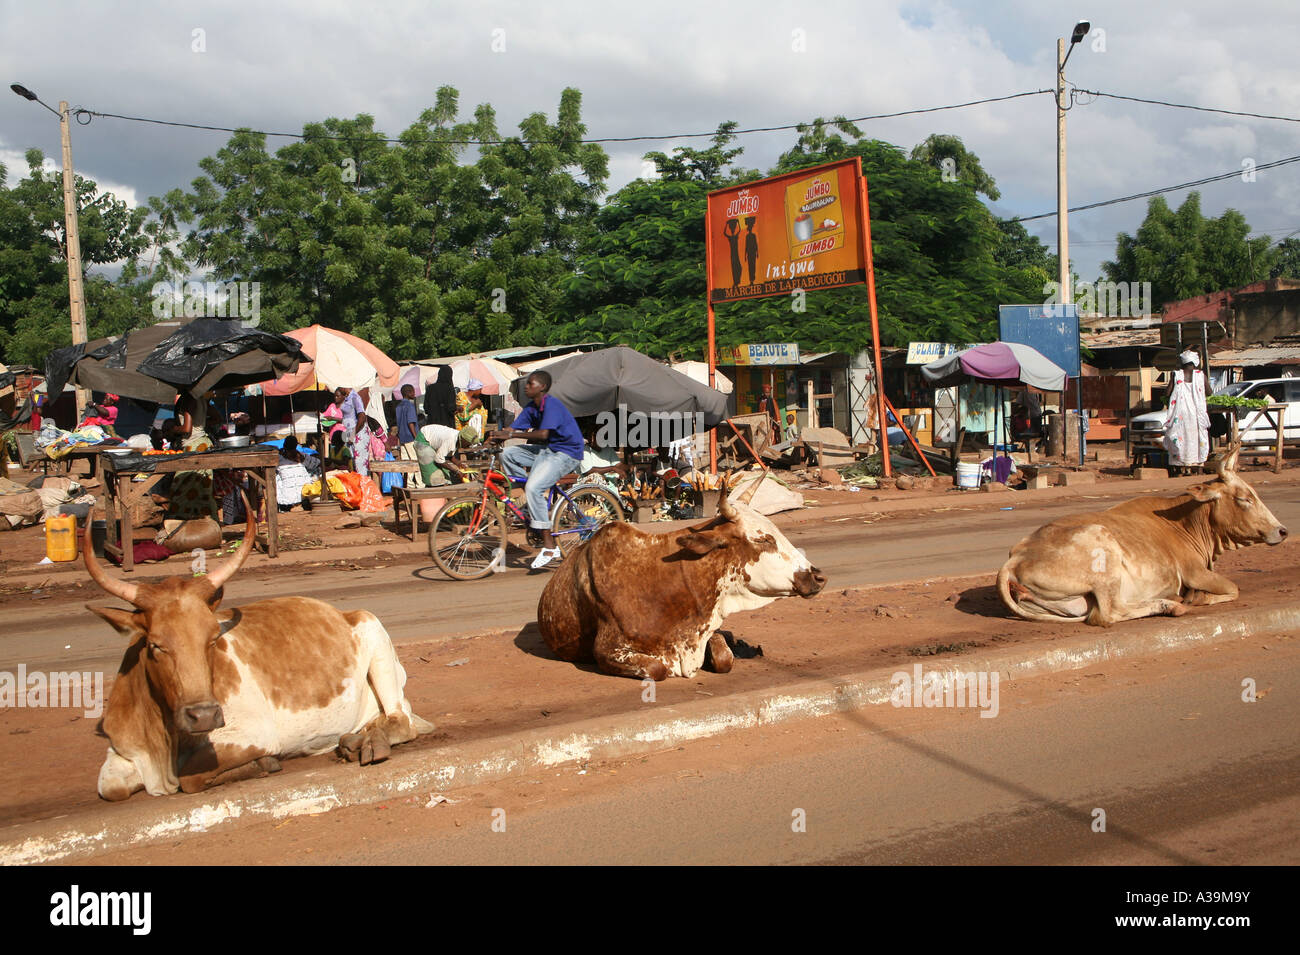 Les vaches et autres animaux marcher librement autour de rues de la ville de Bamako au Mali, l'Afrique Banque D'Images